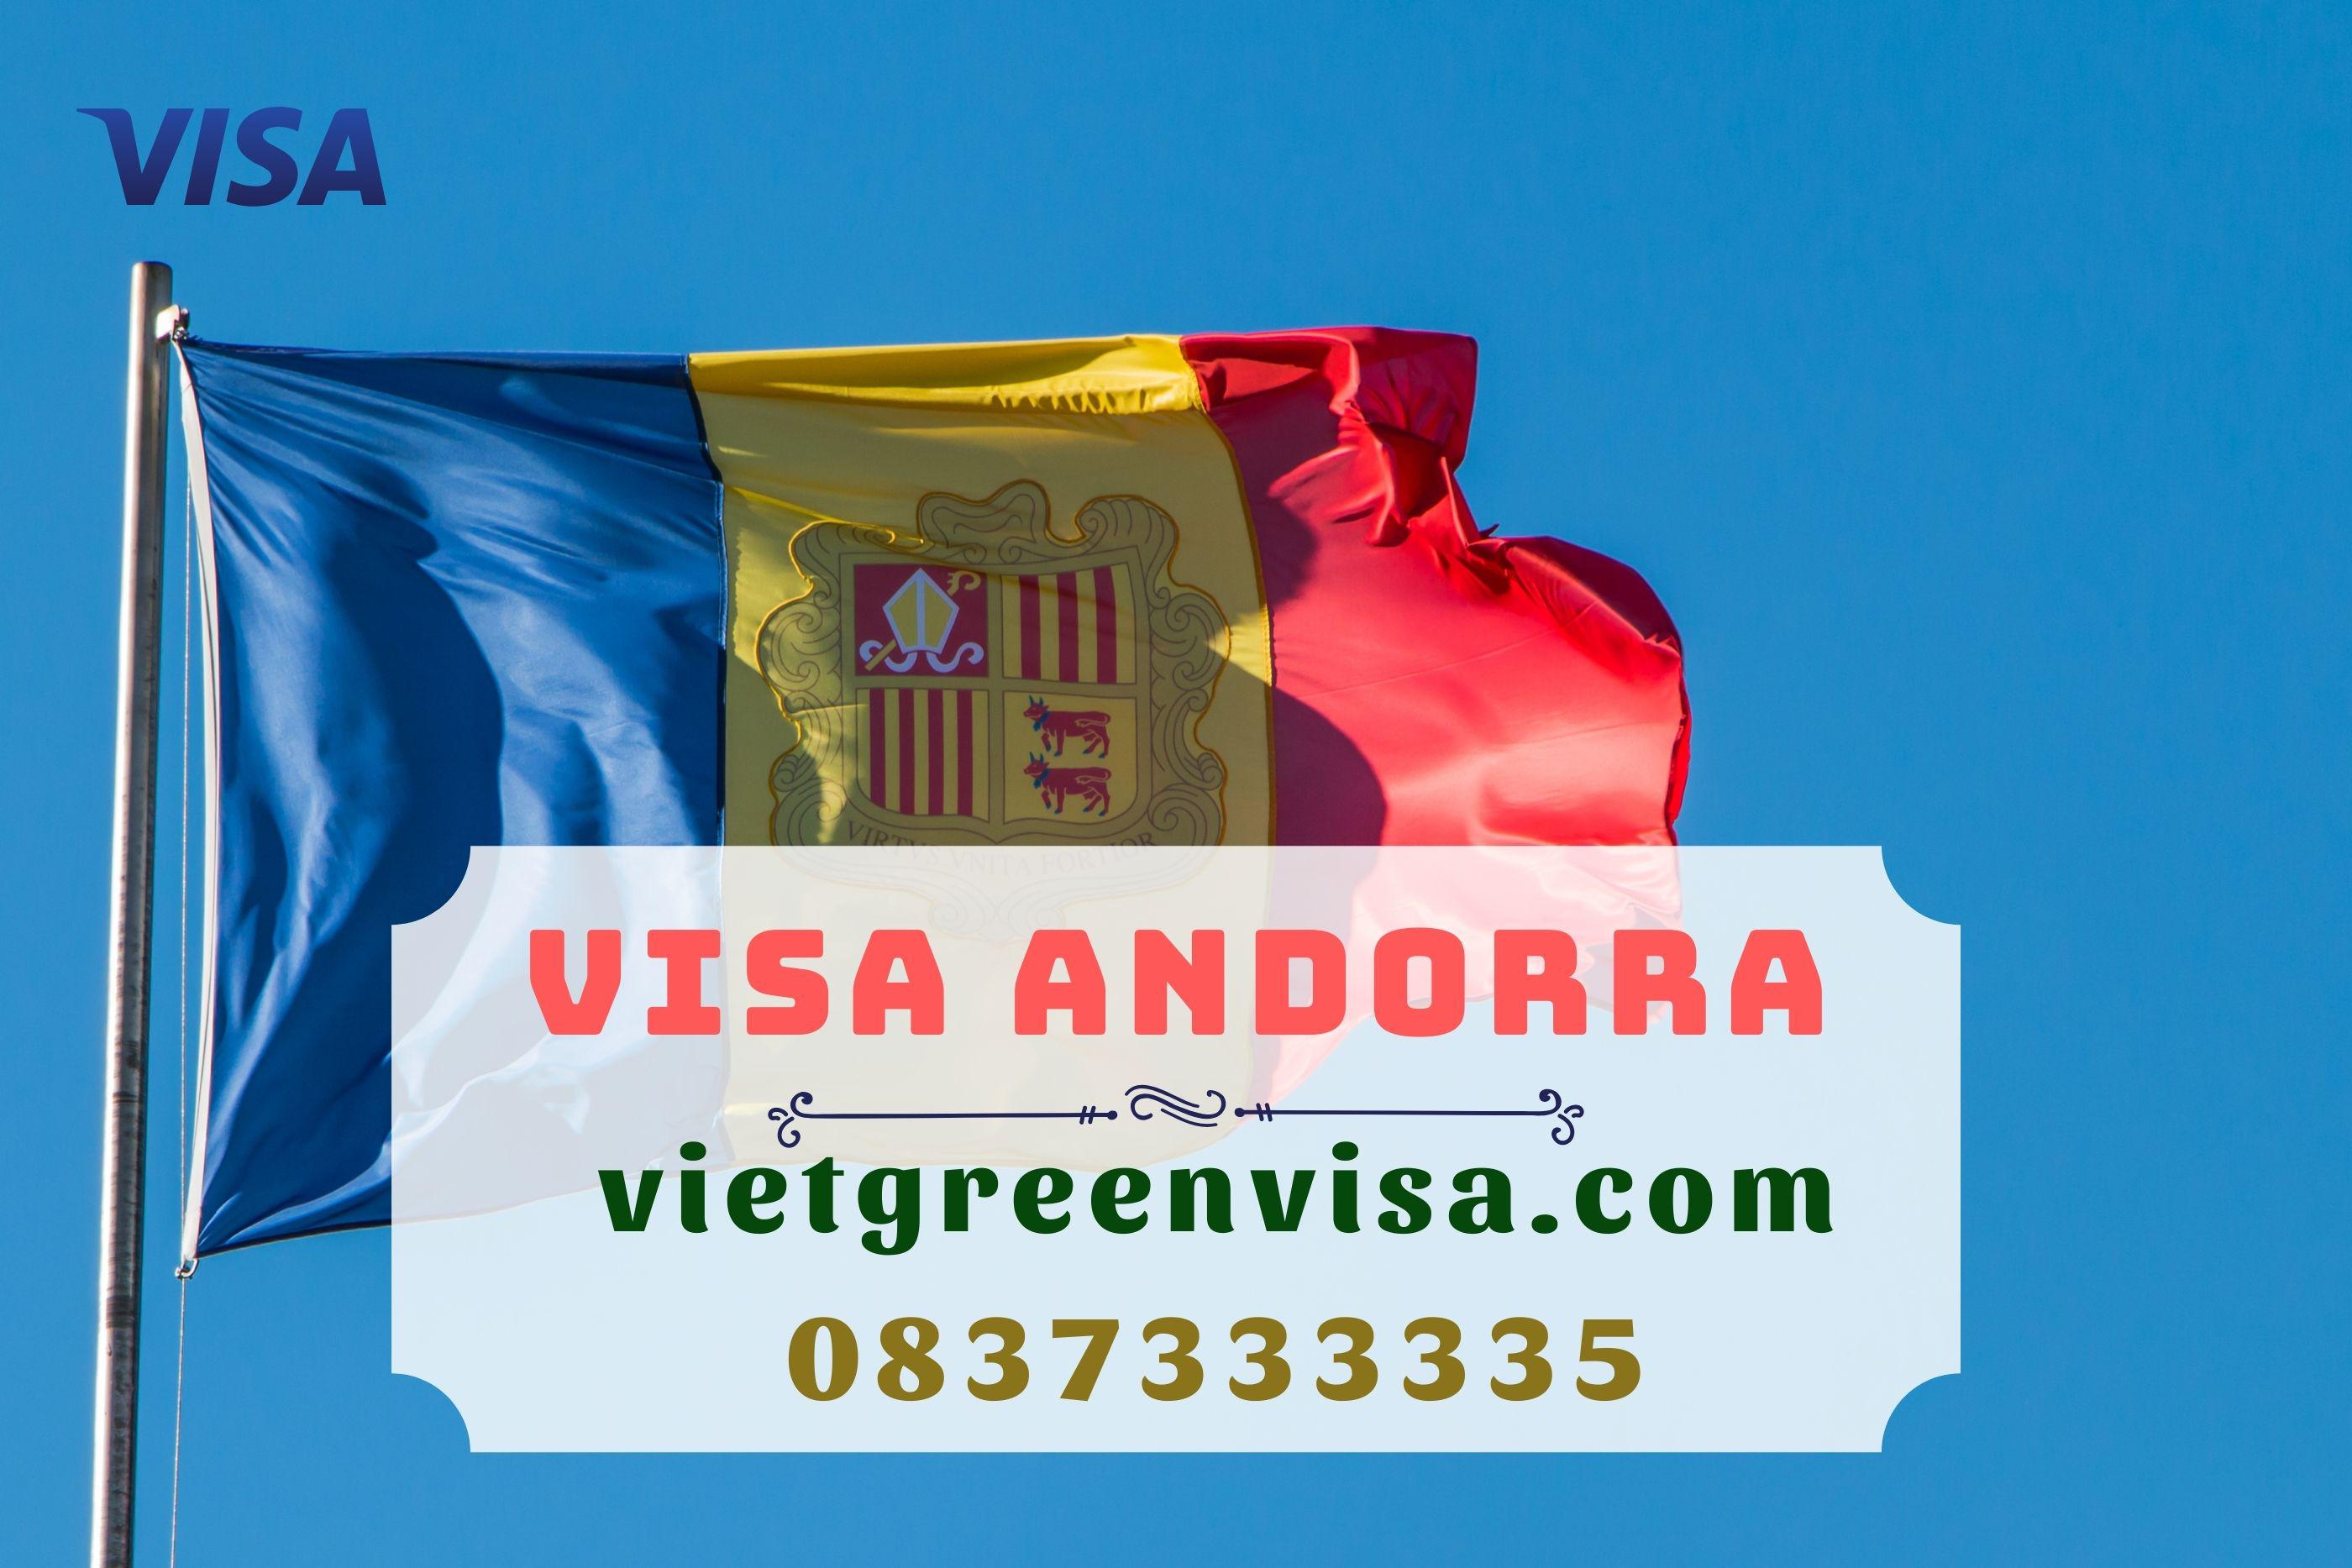 Bí quyết xin visa công tác Andorra nhanh chóng